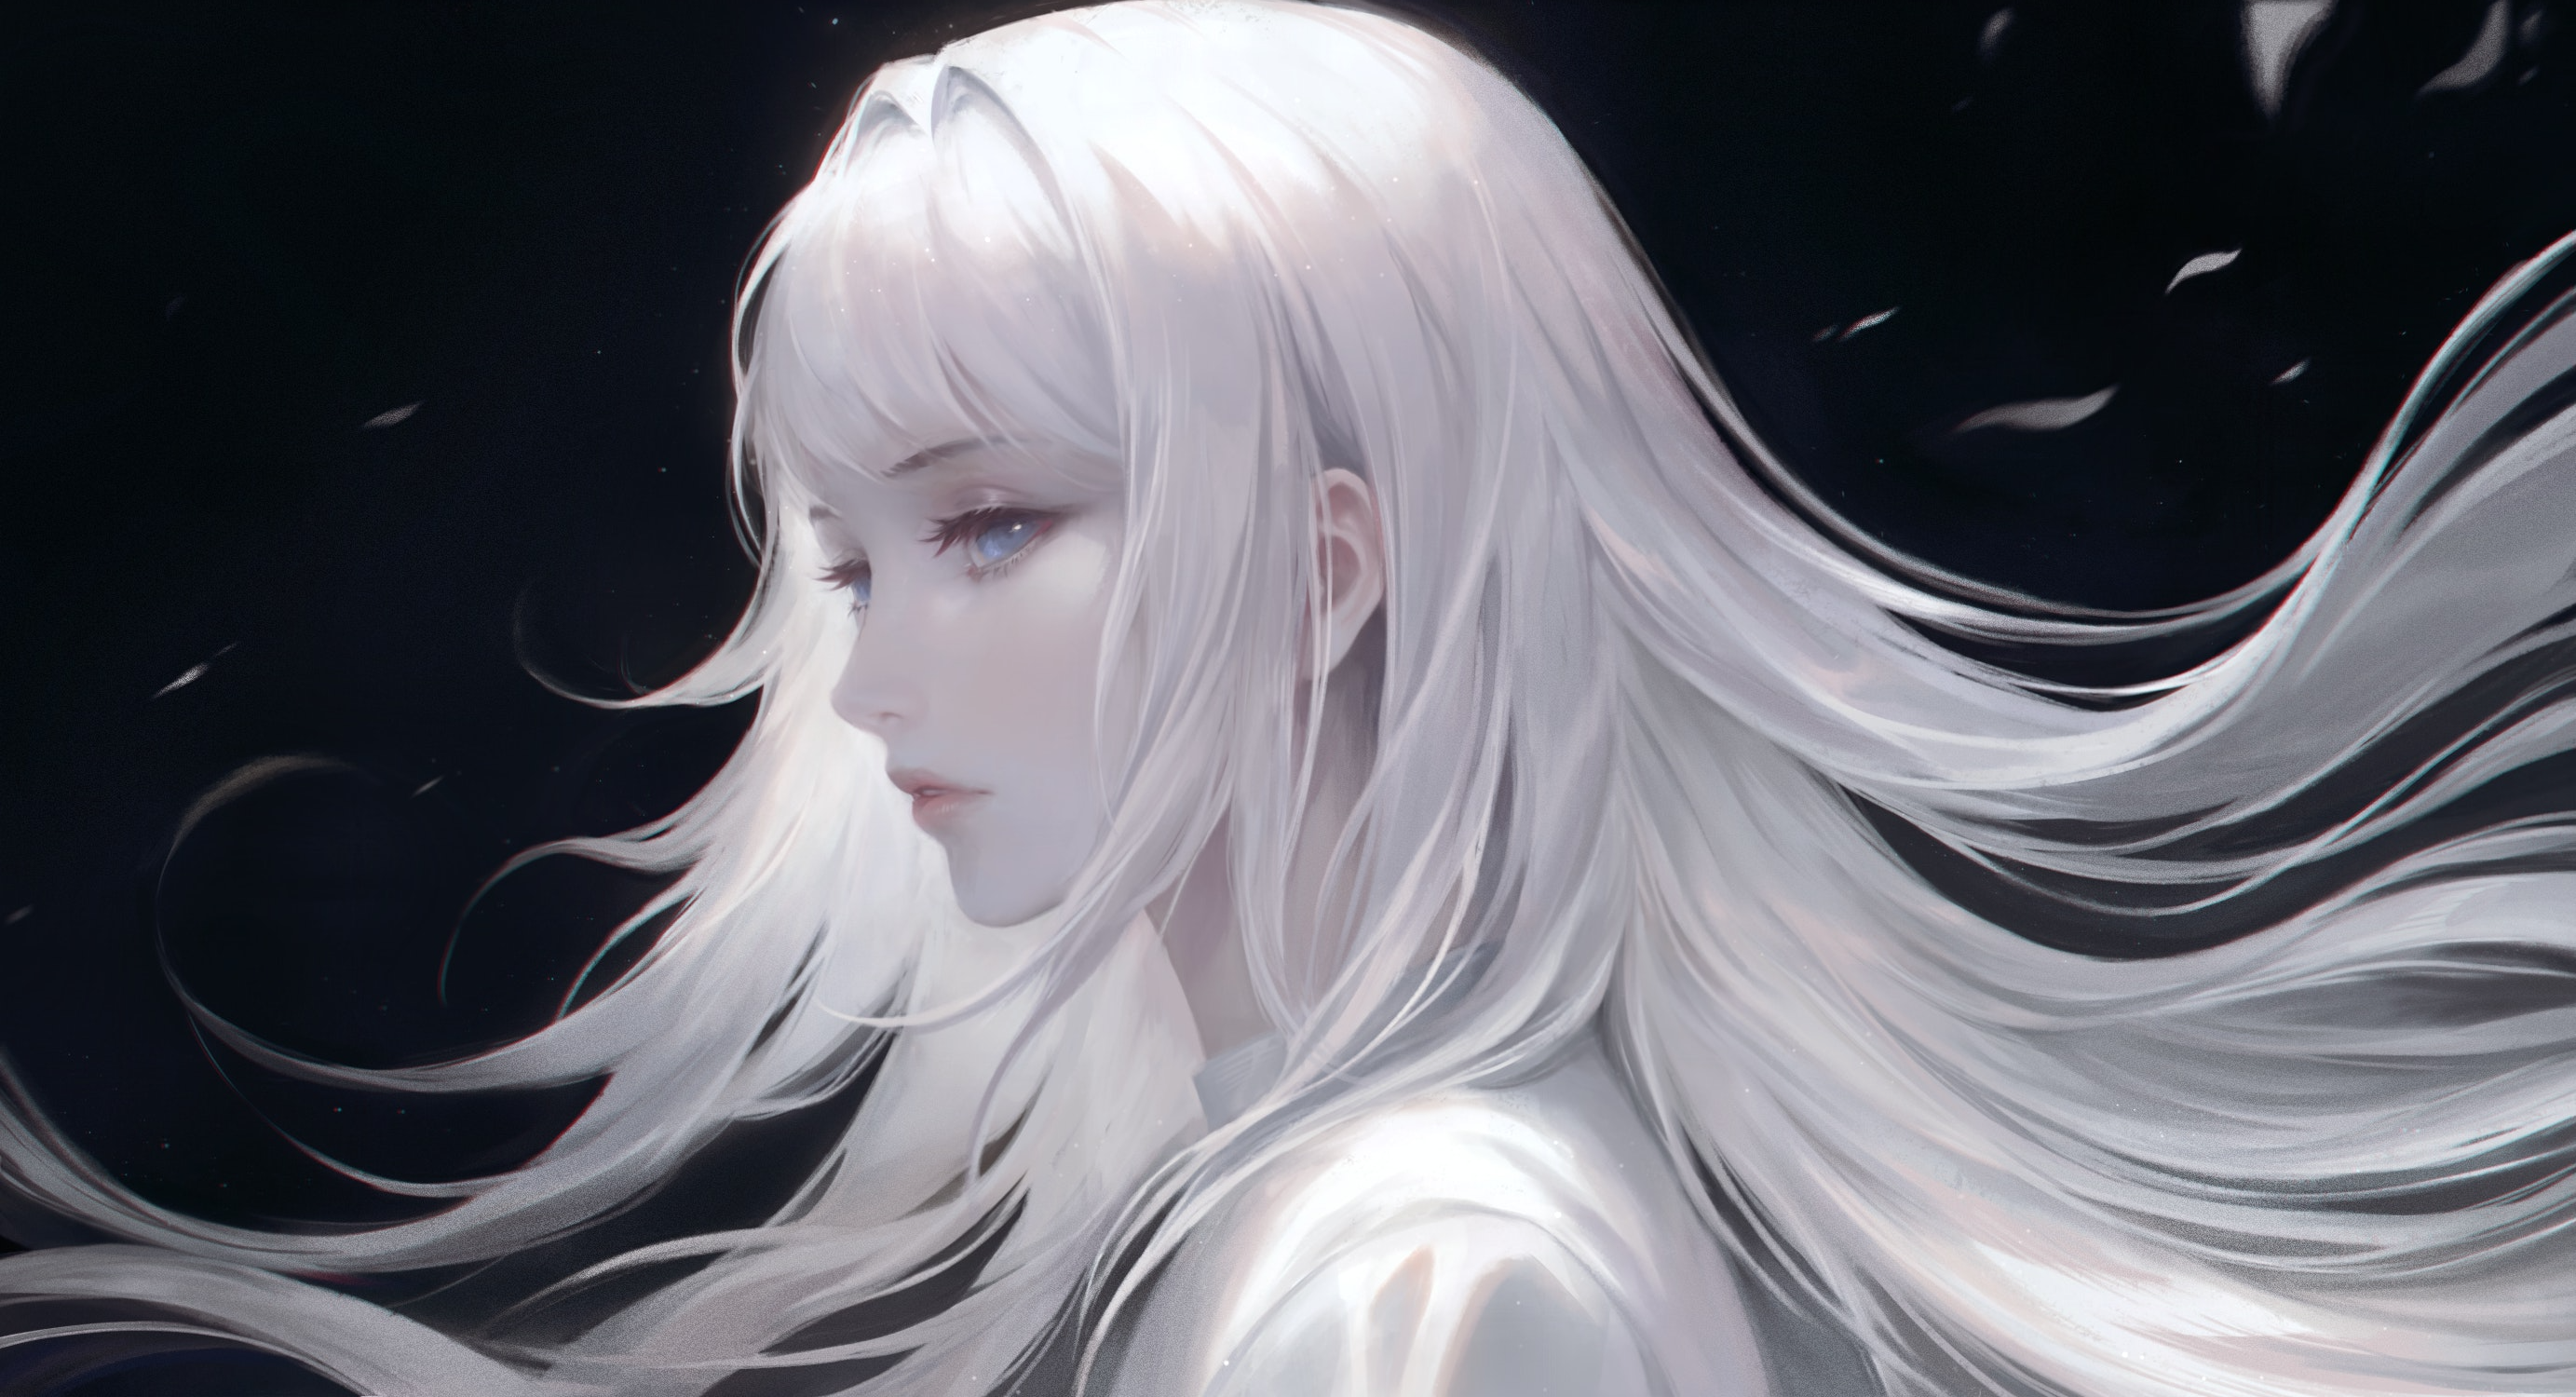 Digital Art Artwork Illustration Anime Anime Girls Face Long Hair White Hair Blue Eyes Women Looking 2766x1500